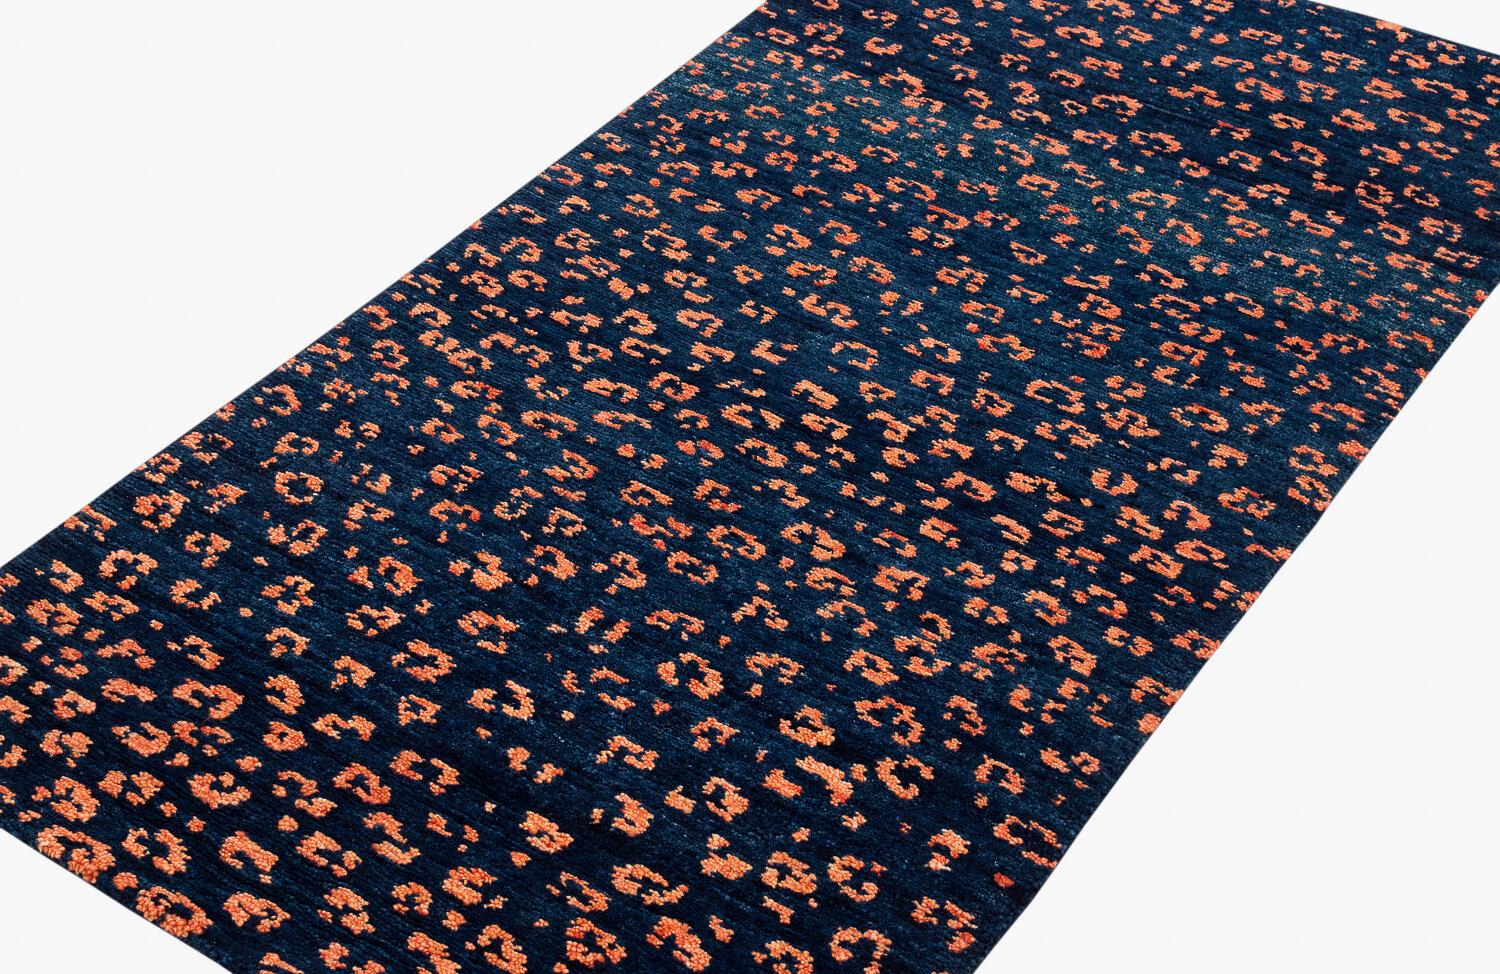 Un indigo profond contraste avec les taches orange de ce motif imprimé léopard. Tissé à la main en laine de l'Himalaya, Joseph Carini s'est inspiré des marques de l'une des créatures sauvages les plus majestueuses et les plus insaisissables. D'une